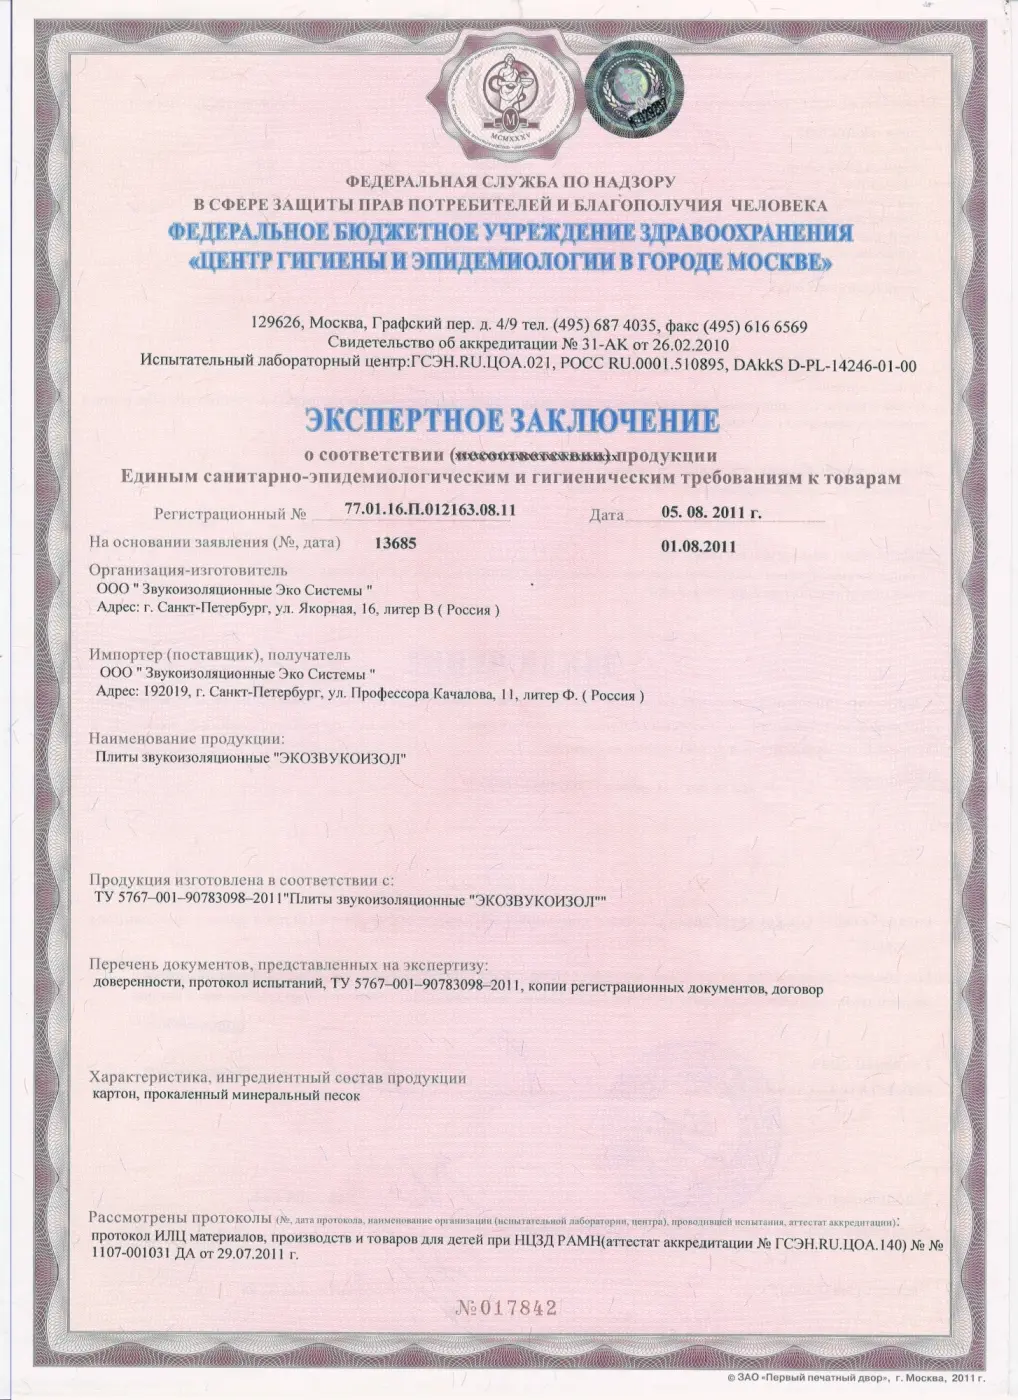 Санитарно-гигиенический сертификат